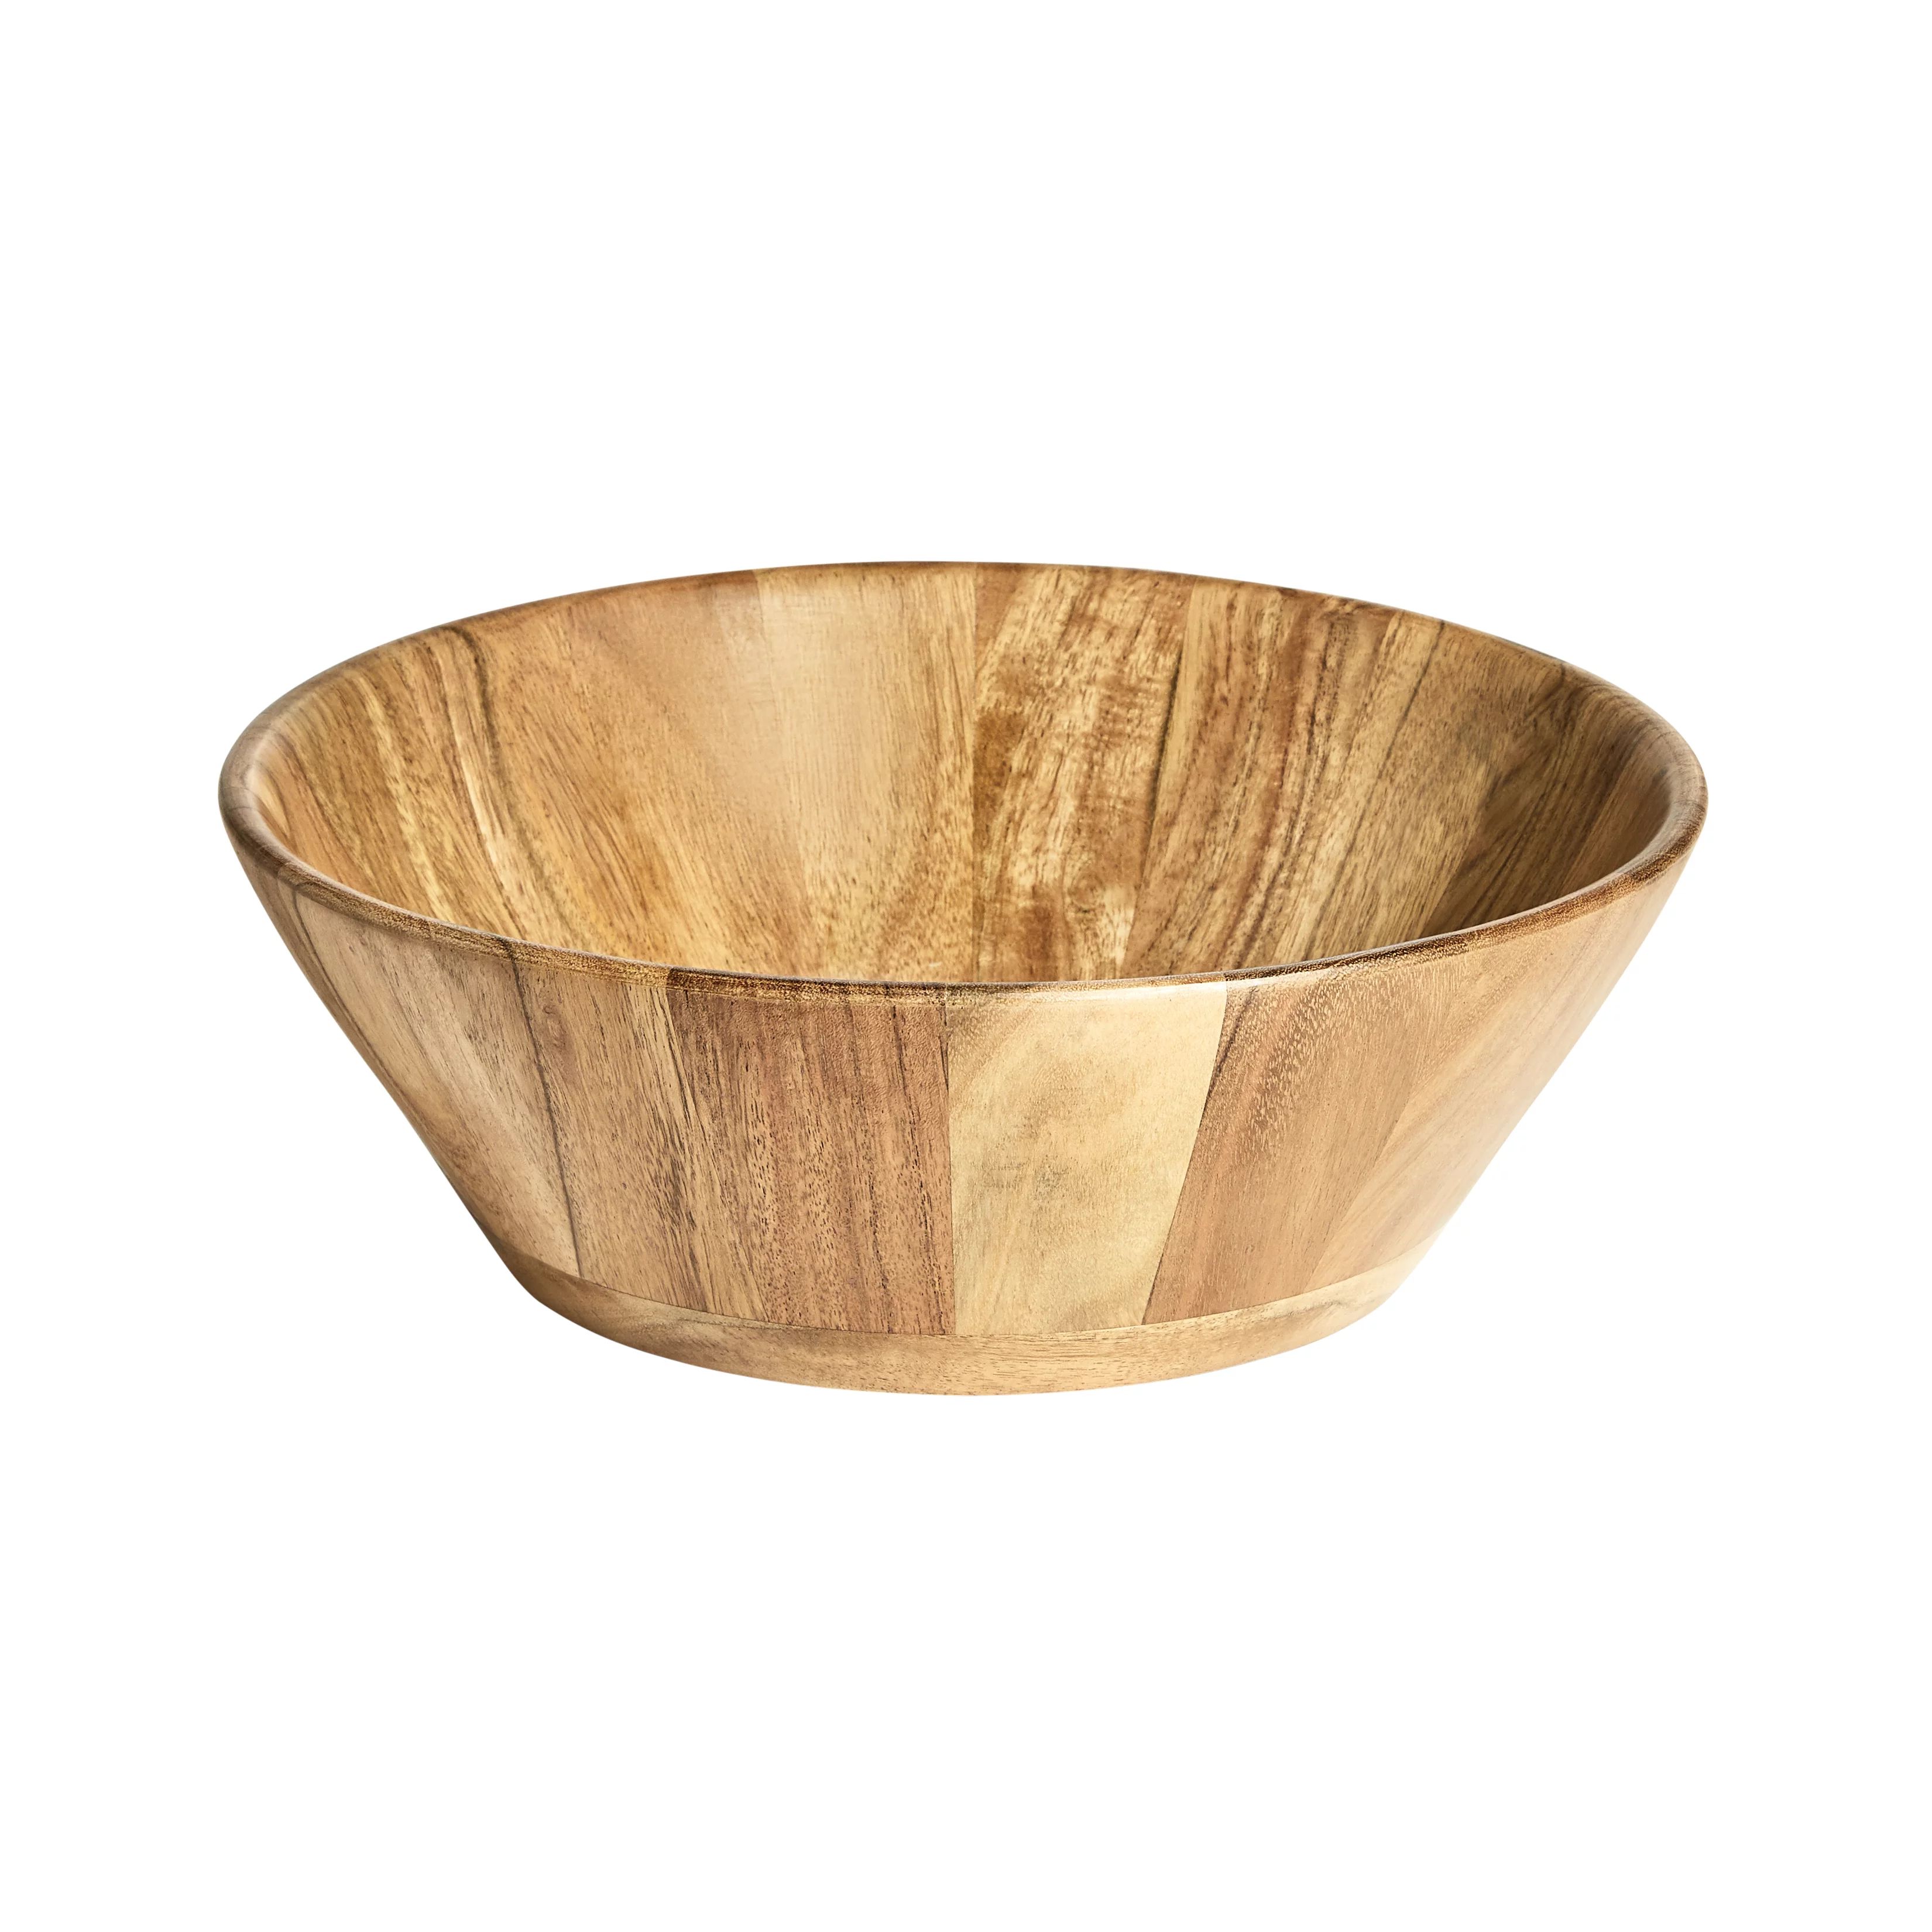 Better Homes & Gardens- Acacia Wood Large Angled Bowl, Natural Finish | Walmart (US)